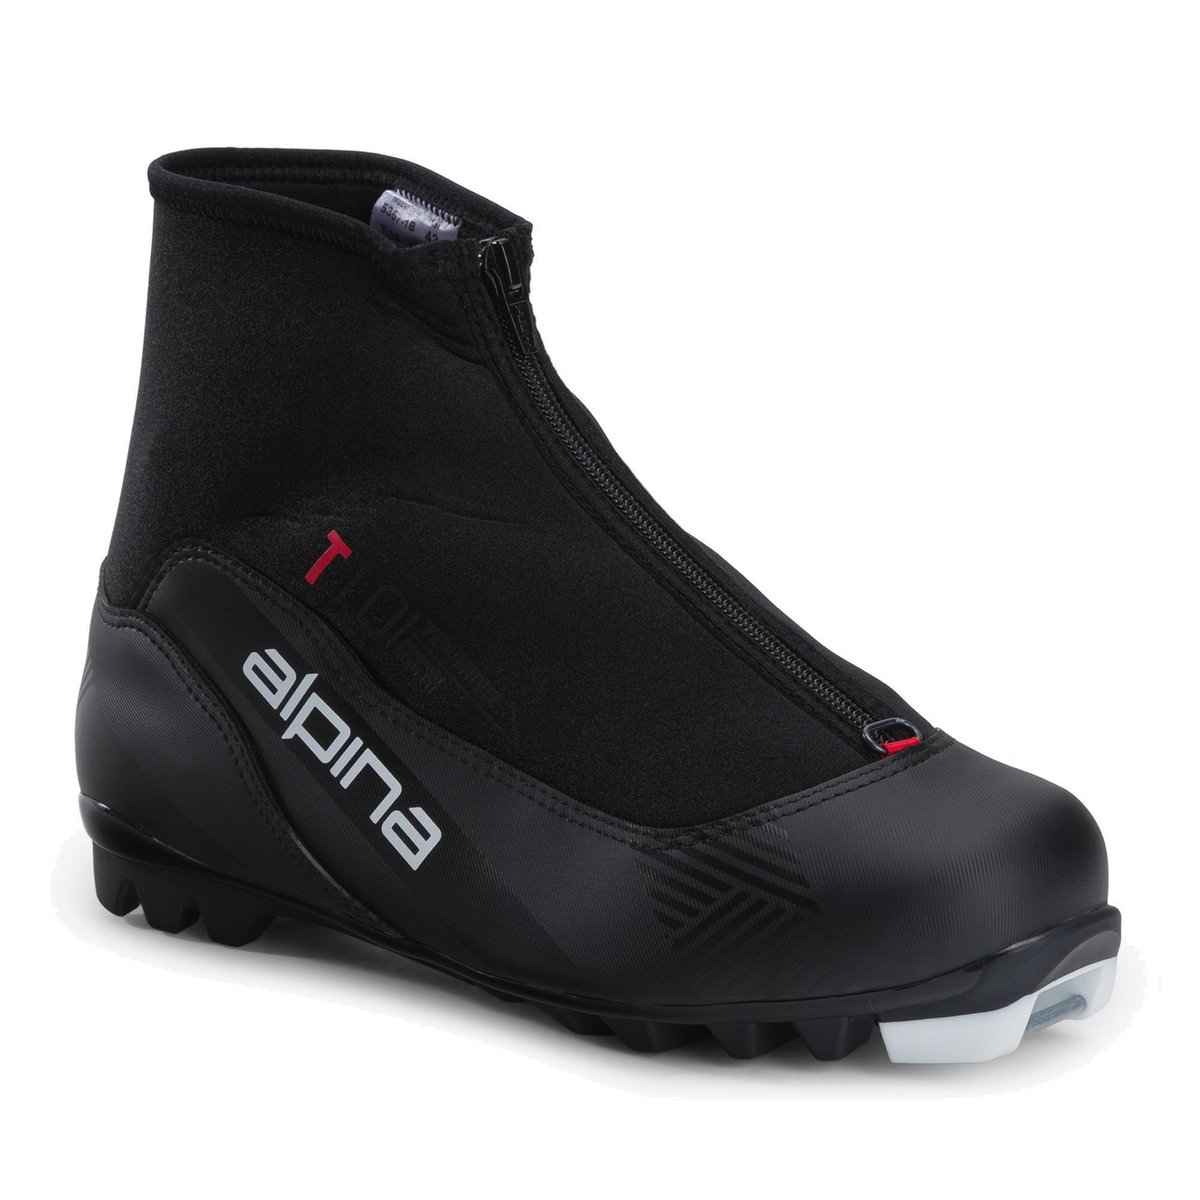 Buty narciarskie biegowe męskie Alpina T 10 czarno-czerwone 5357-1  44 eu